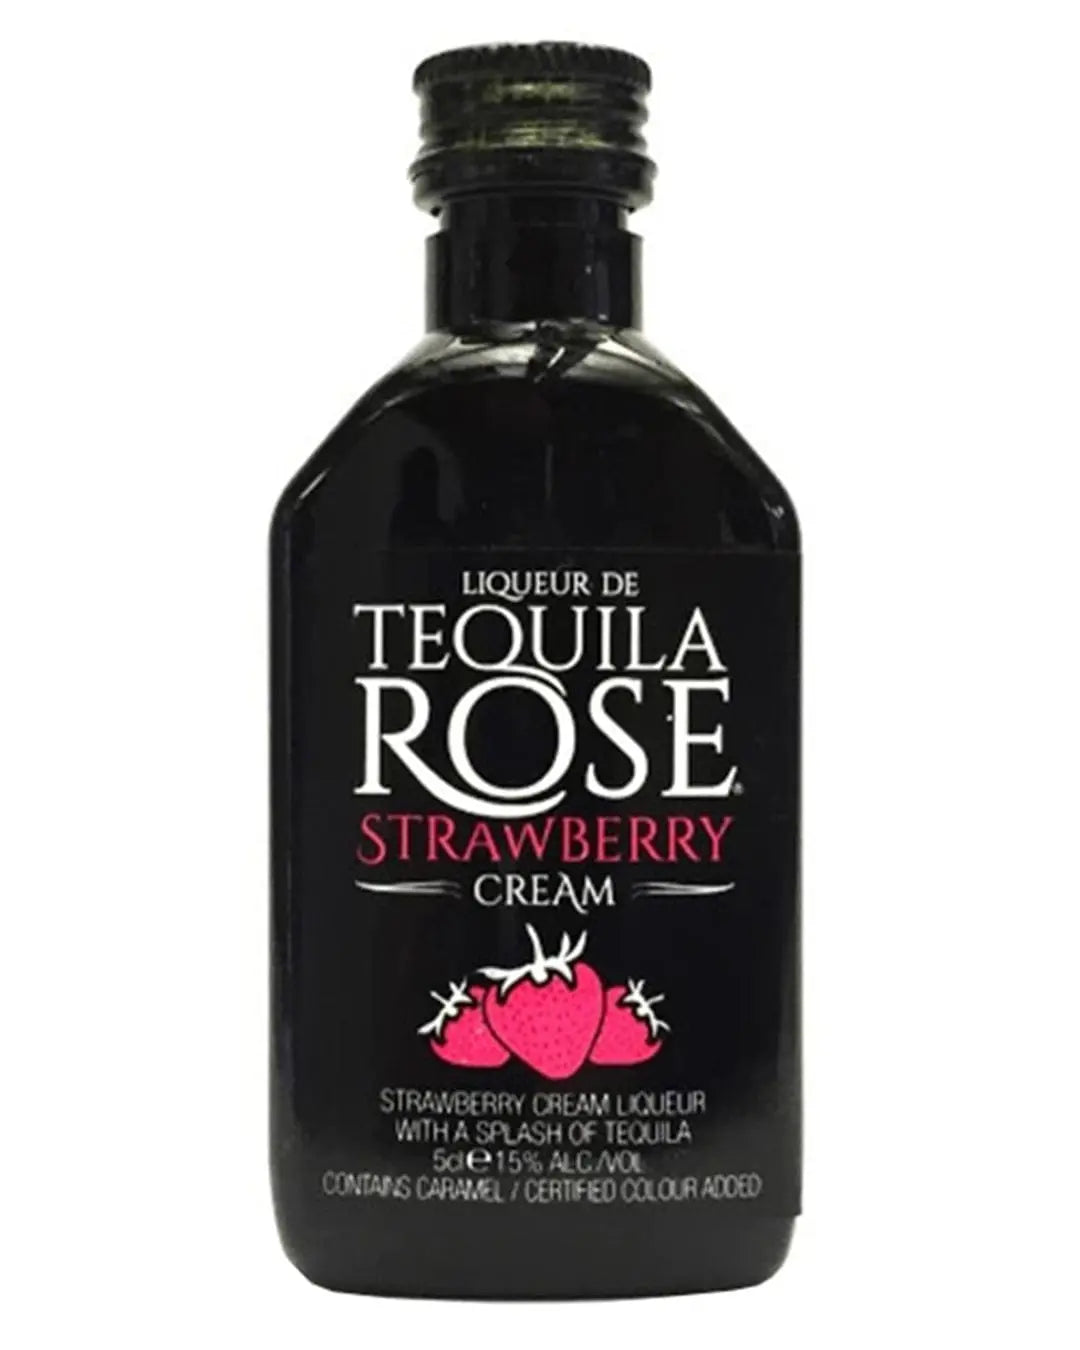 Tequila Rose Strawberry Cream Liqueur Miniature, 5 cl Spirit Miniatures 85592121081